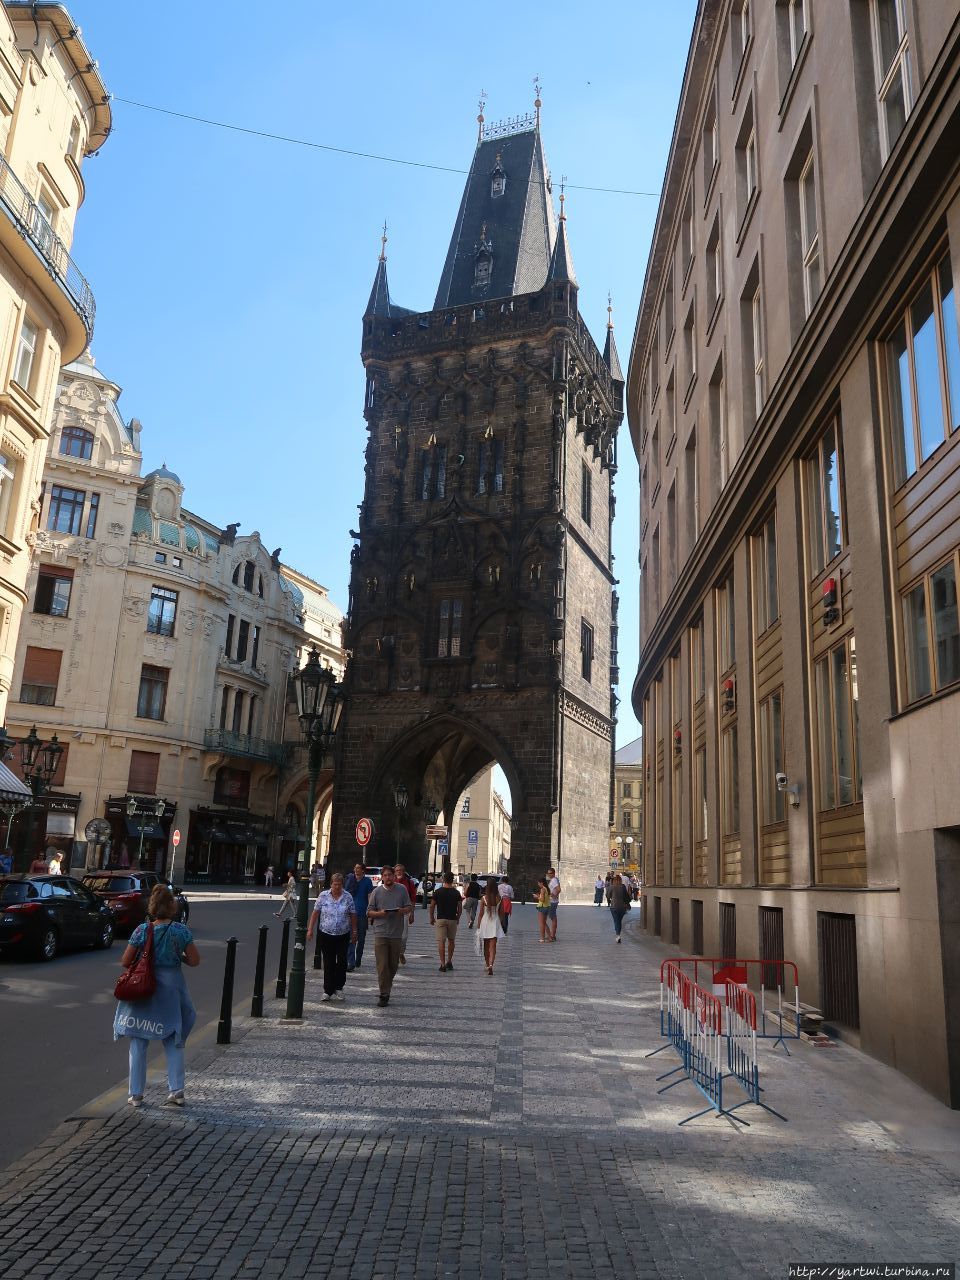 Пороховая башня (Пороховые ворота) — готическая башня в Праге, памятник архитектуры XV века. Находится на Площади Республики. От Пороховой башни поворачиваем на торговую улицу На Пршикопе. Прага, Чехия